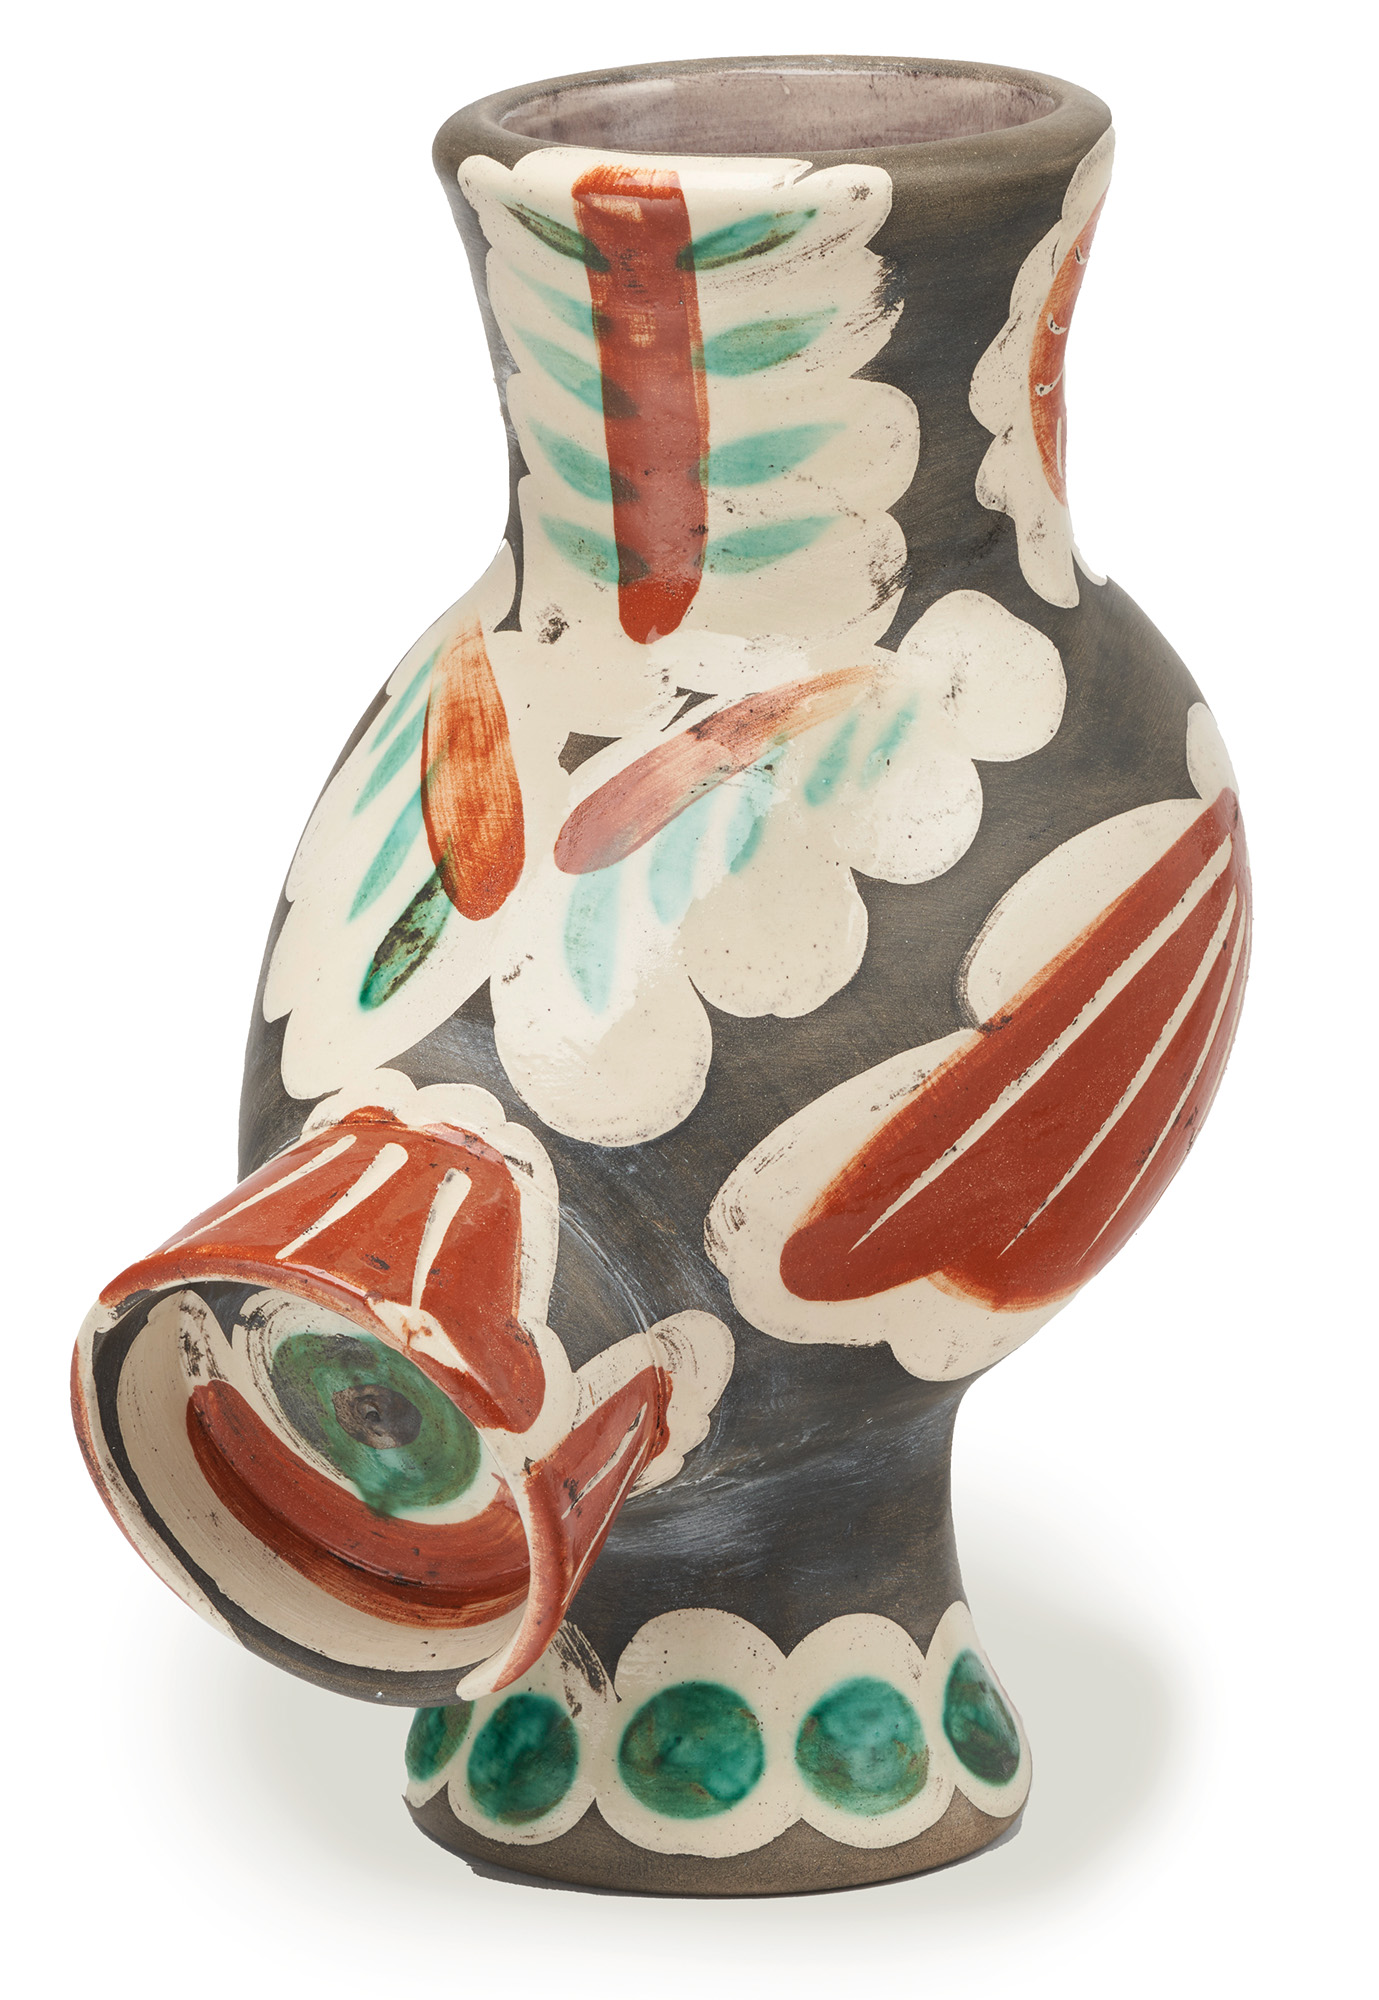 Objekt "Chouette" (1968), Keramik von Pablo Picasso